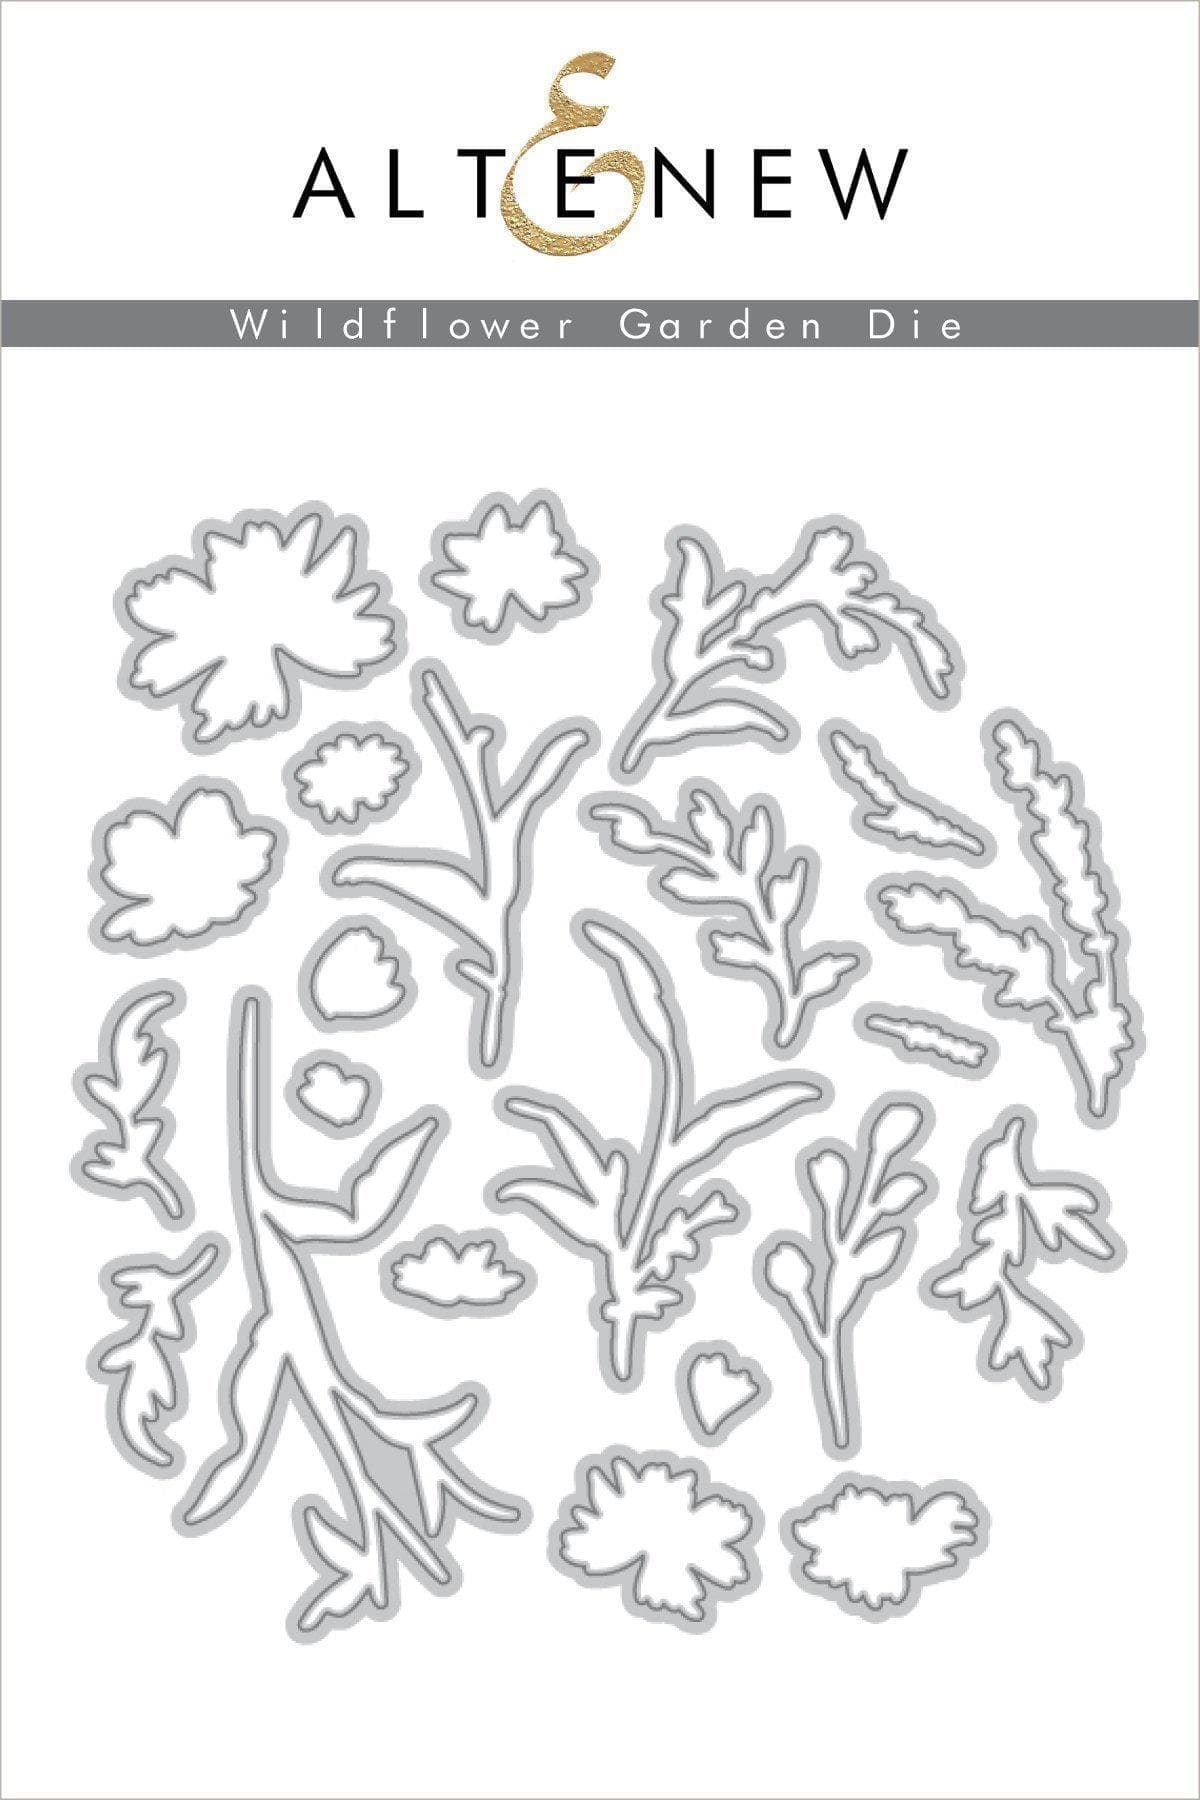 Altenew Stamp & Die Bundle Wildflower Garden Stamp & Die Bundle